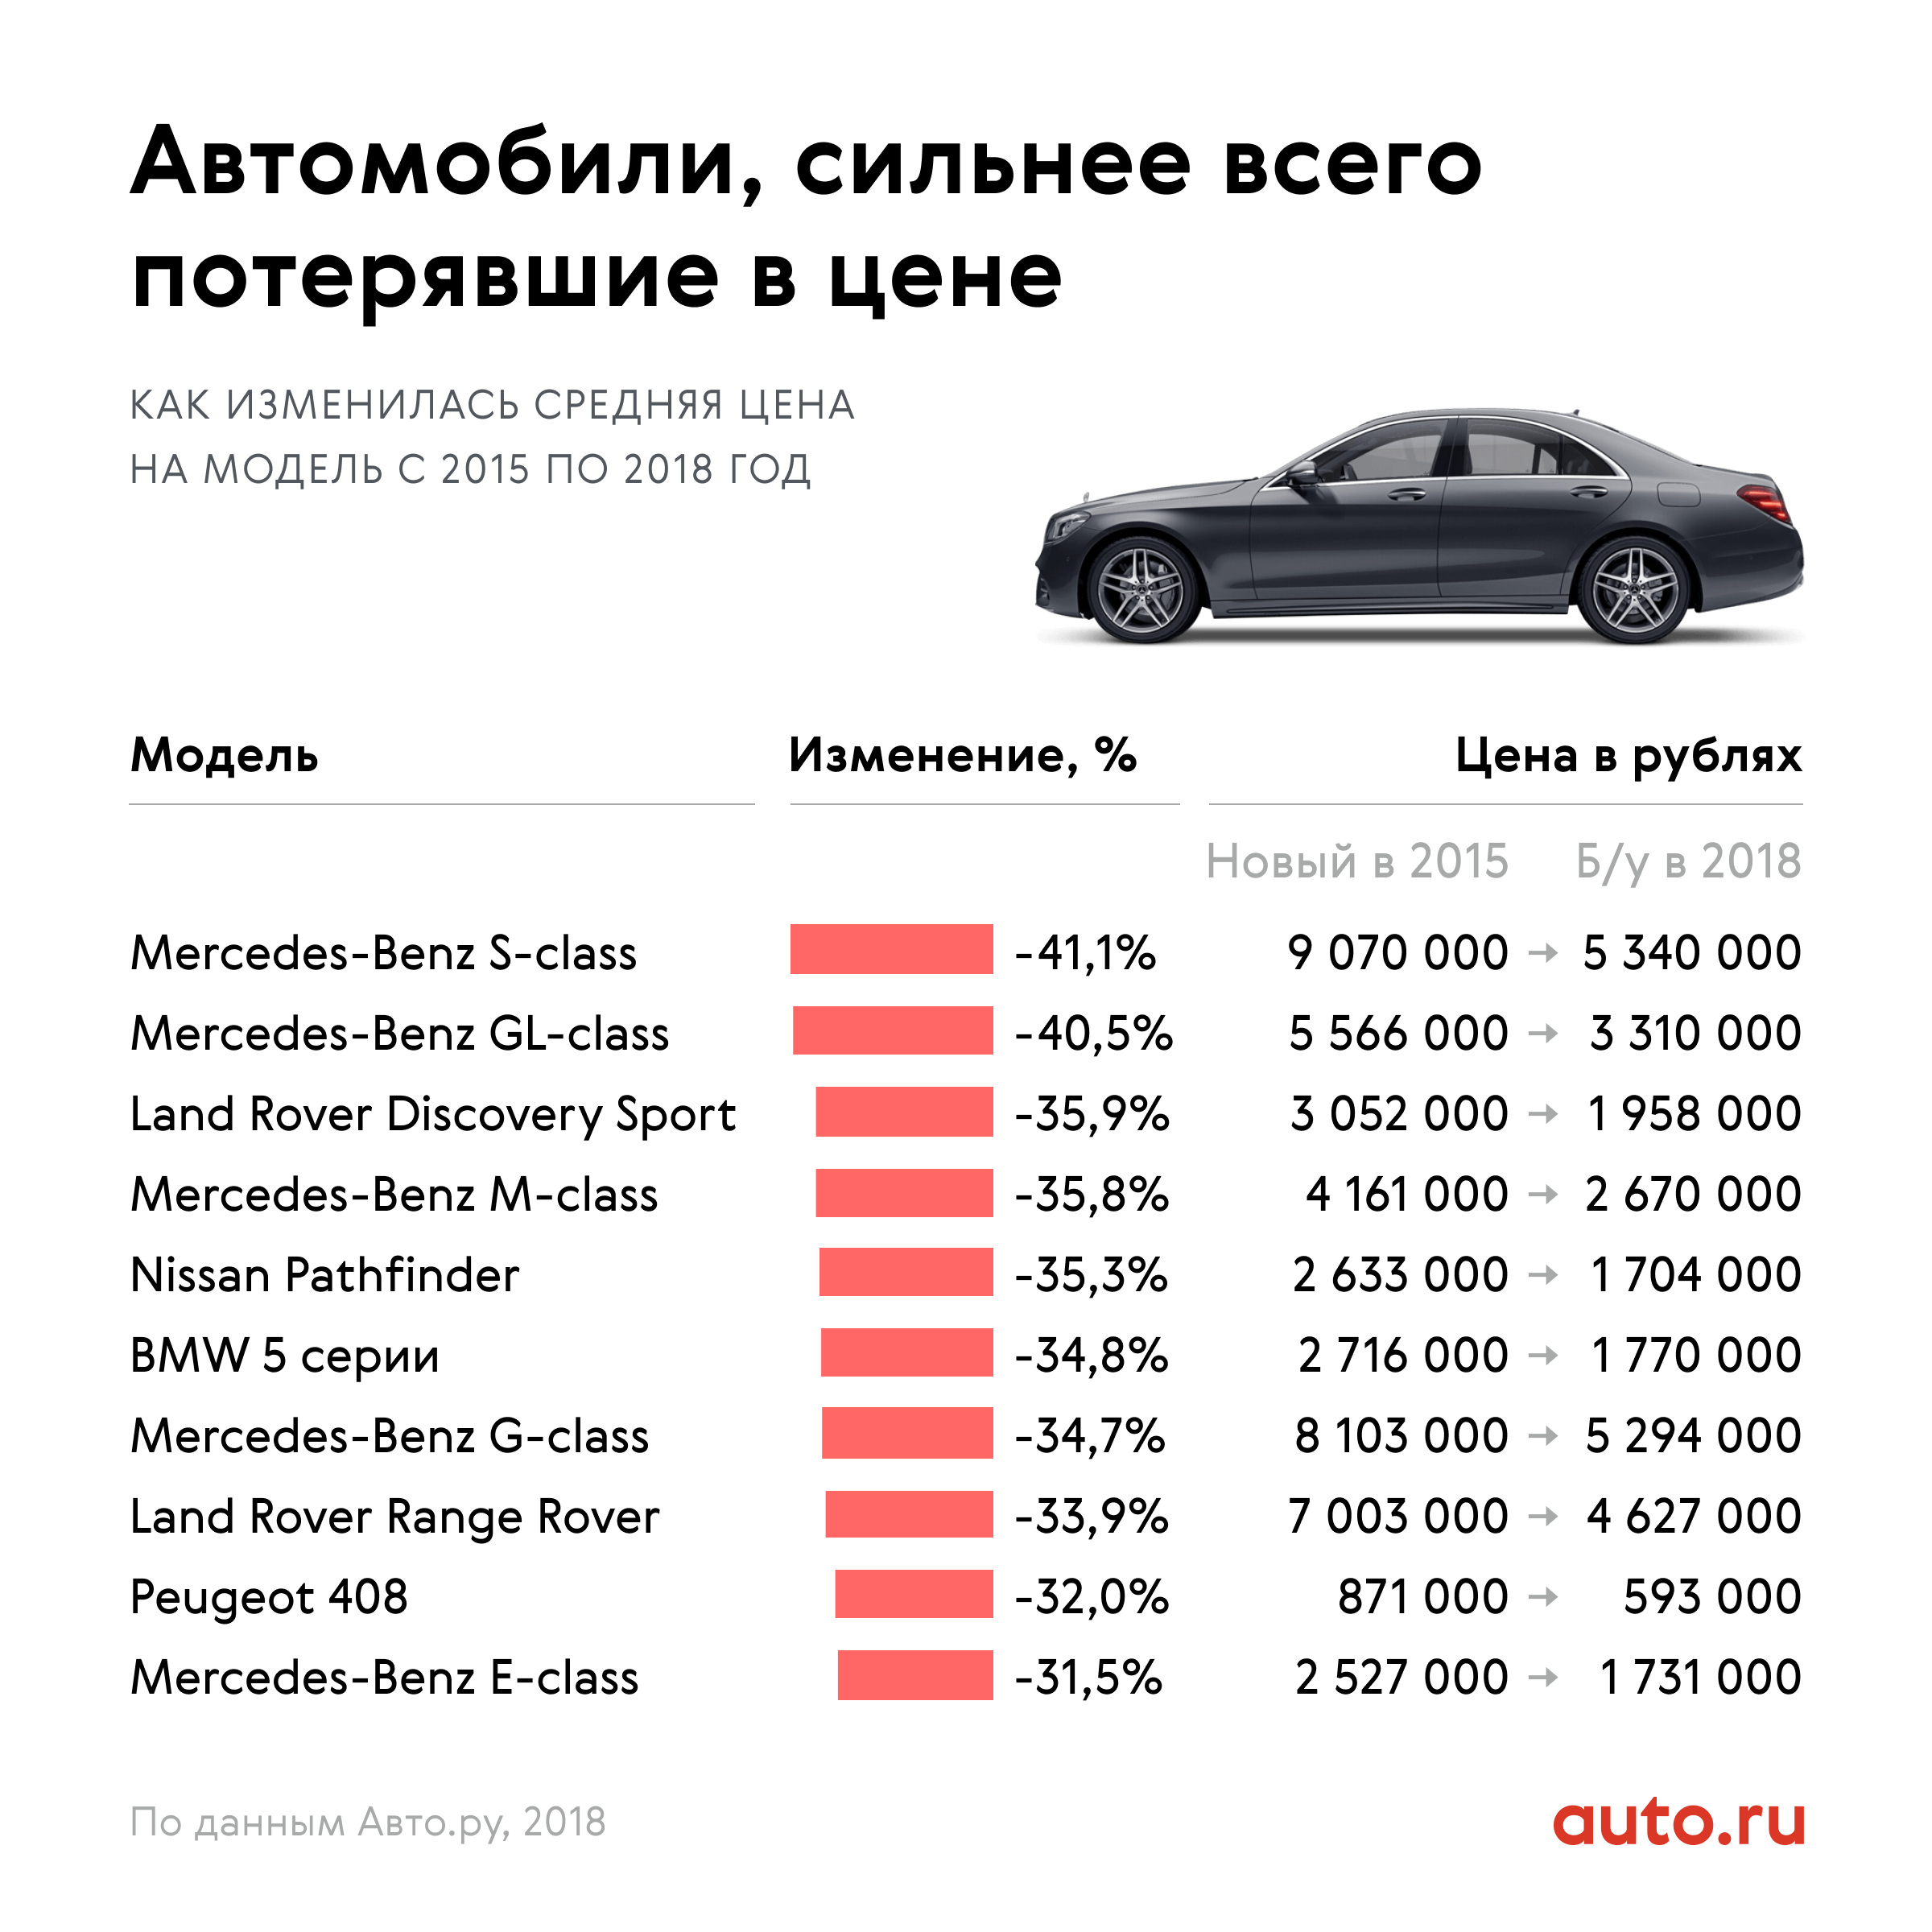 Дешевые иномарки в россии. Самые продаваемые автомобили. Самая продаваемая машина. Удешевление авто по годам. Премиальные марки авто.